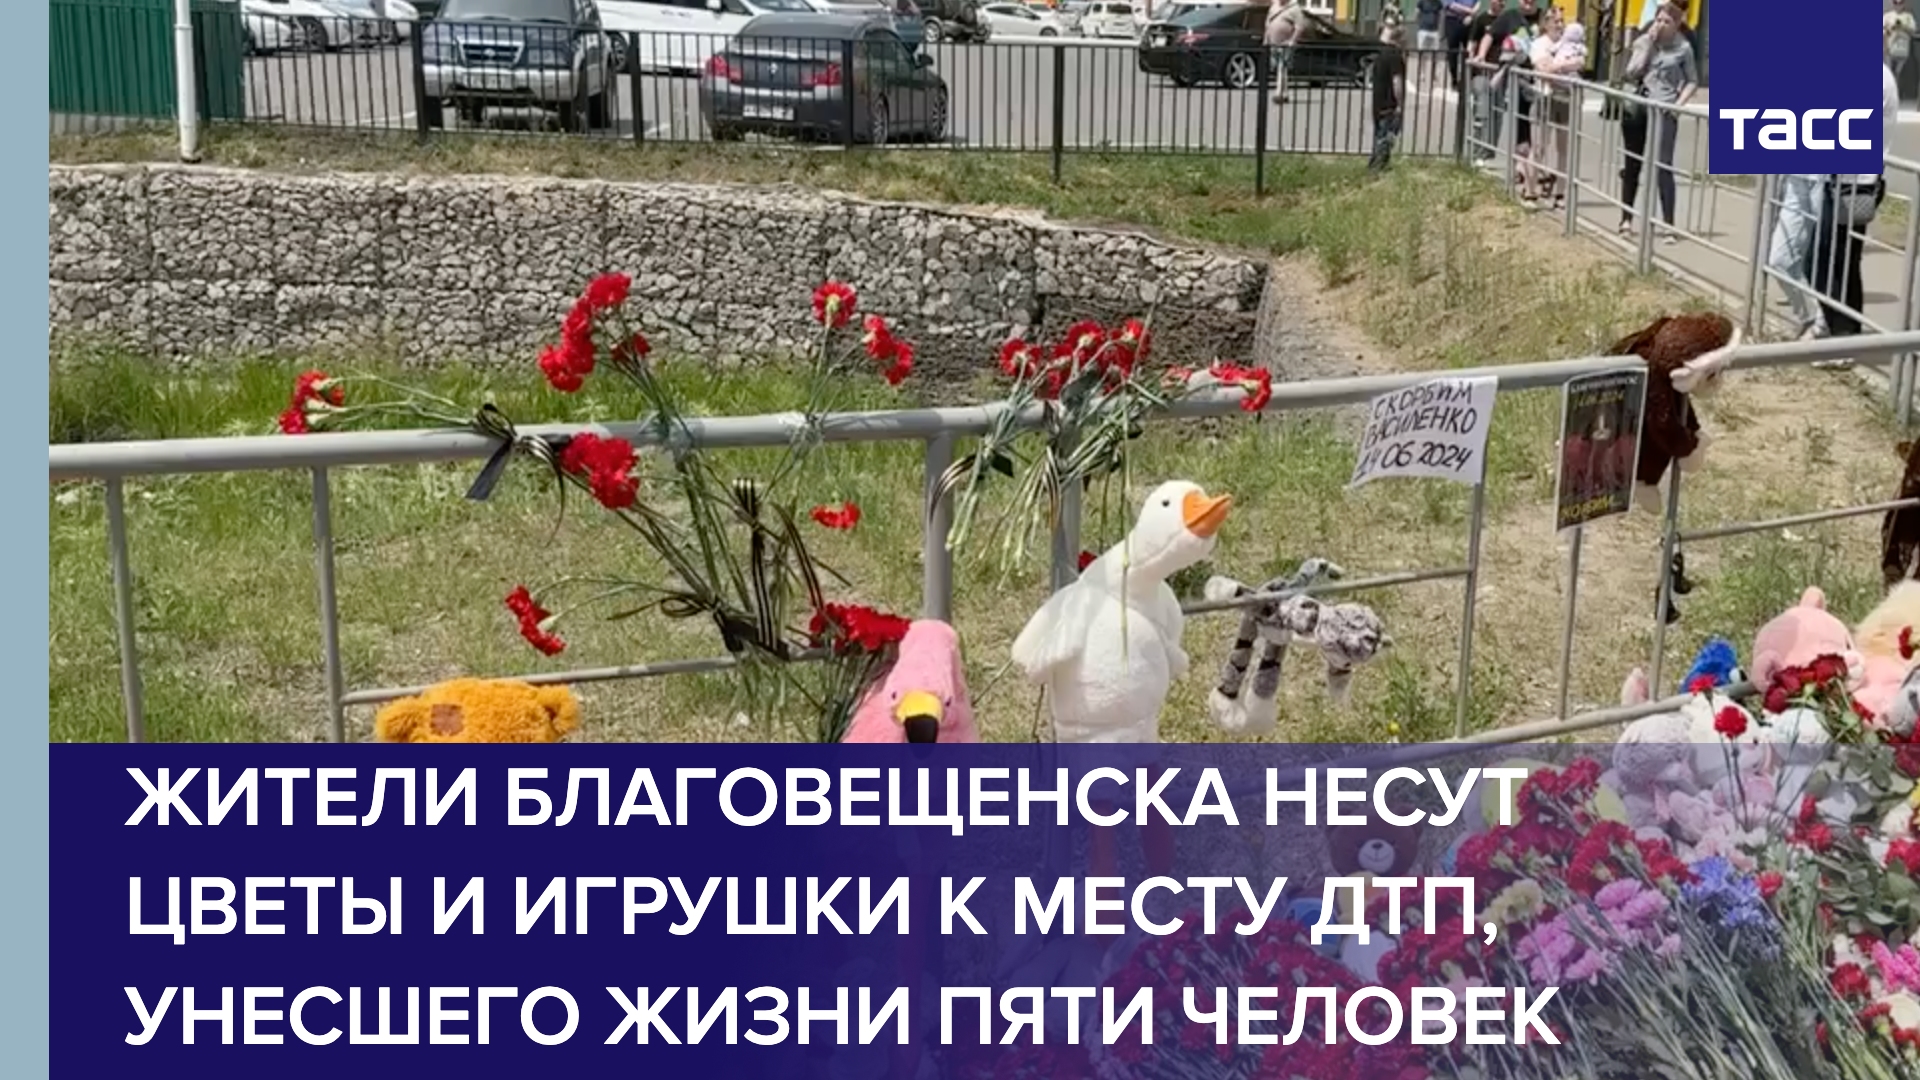 Жители Благовещенска несут цветы и игрушки к месту ДТП, унесшего жизни пяти человек